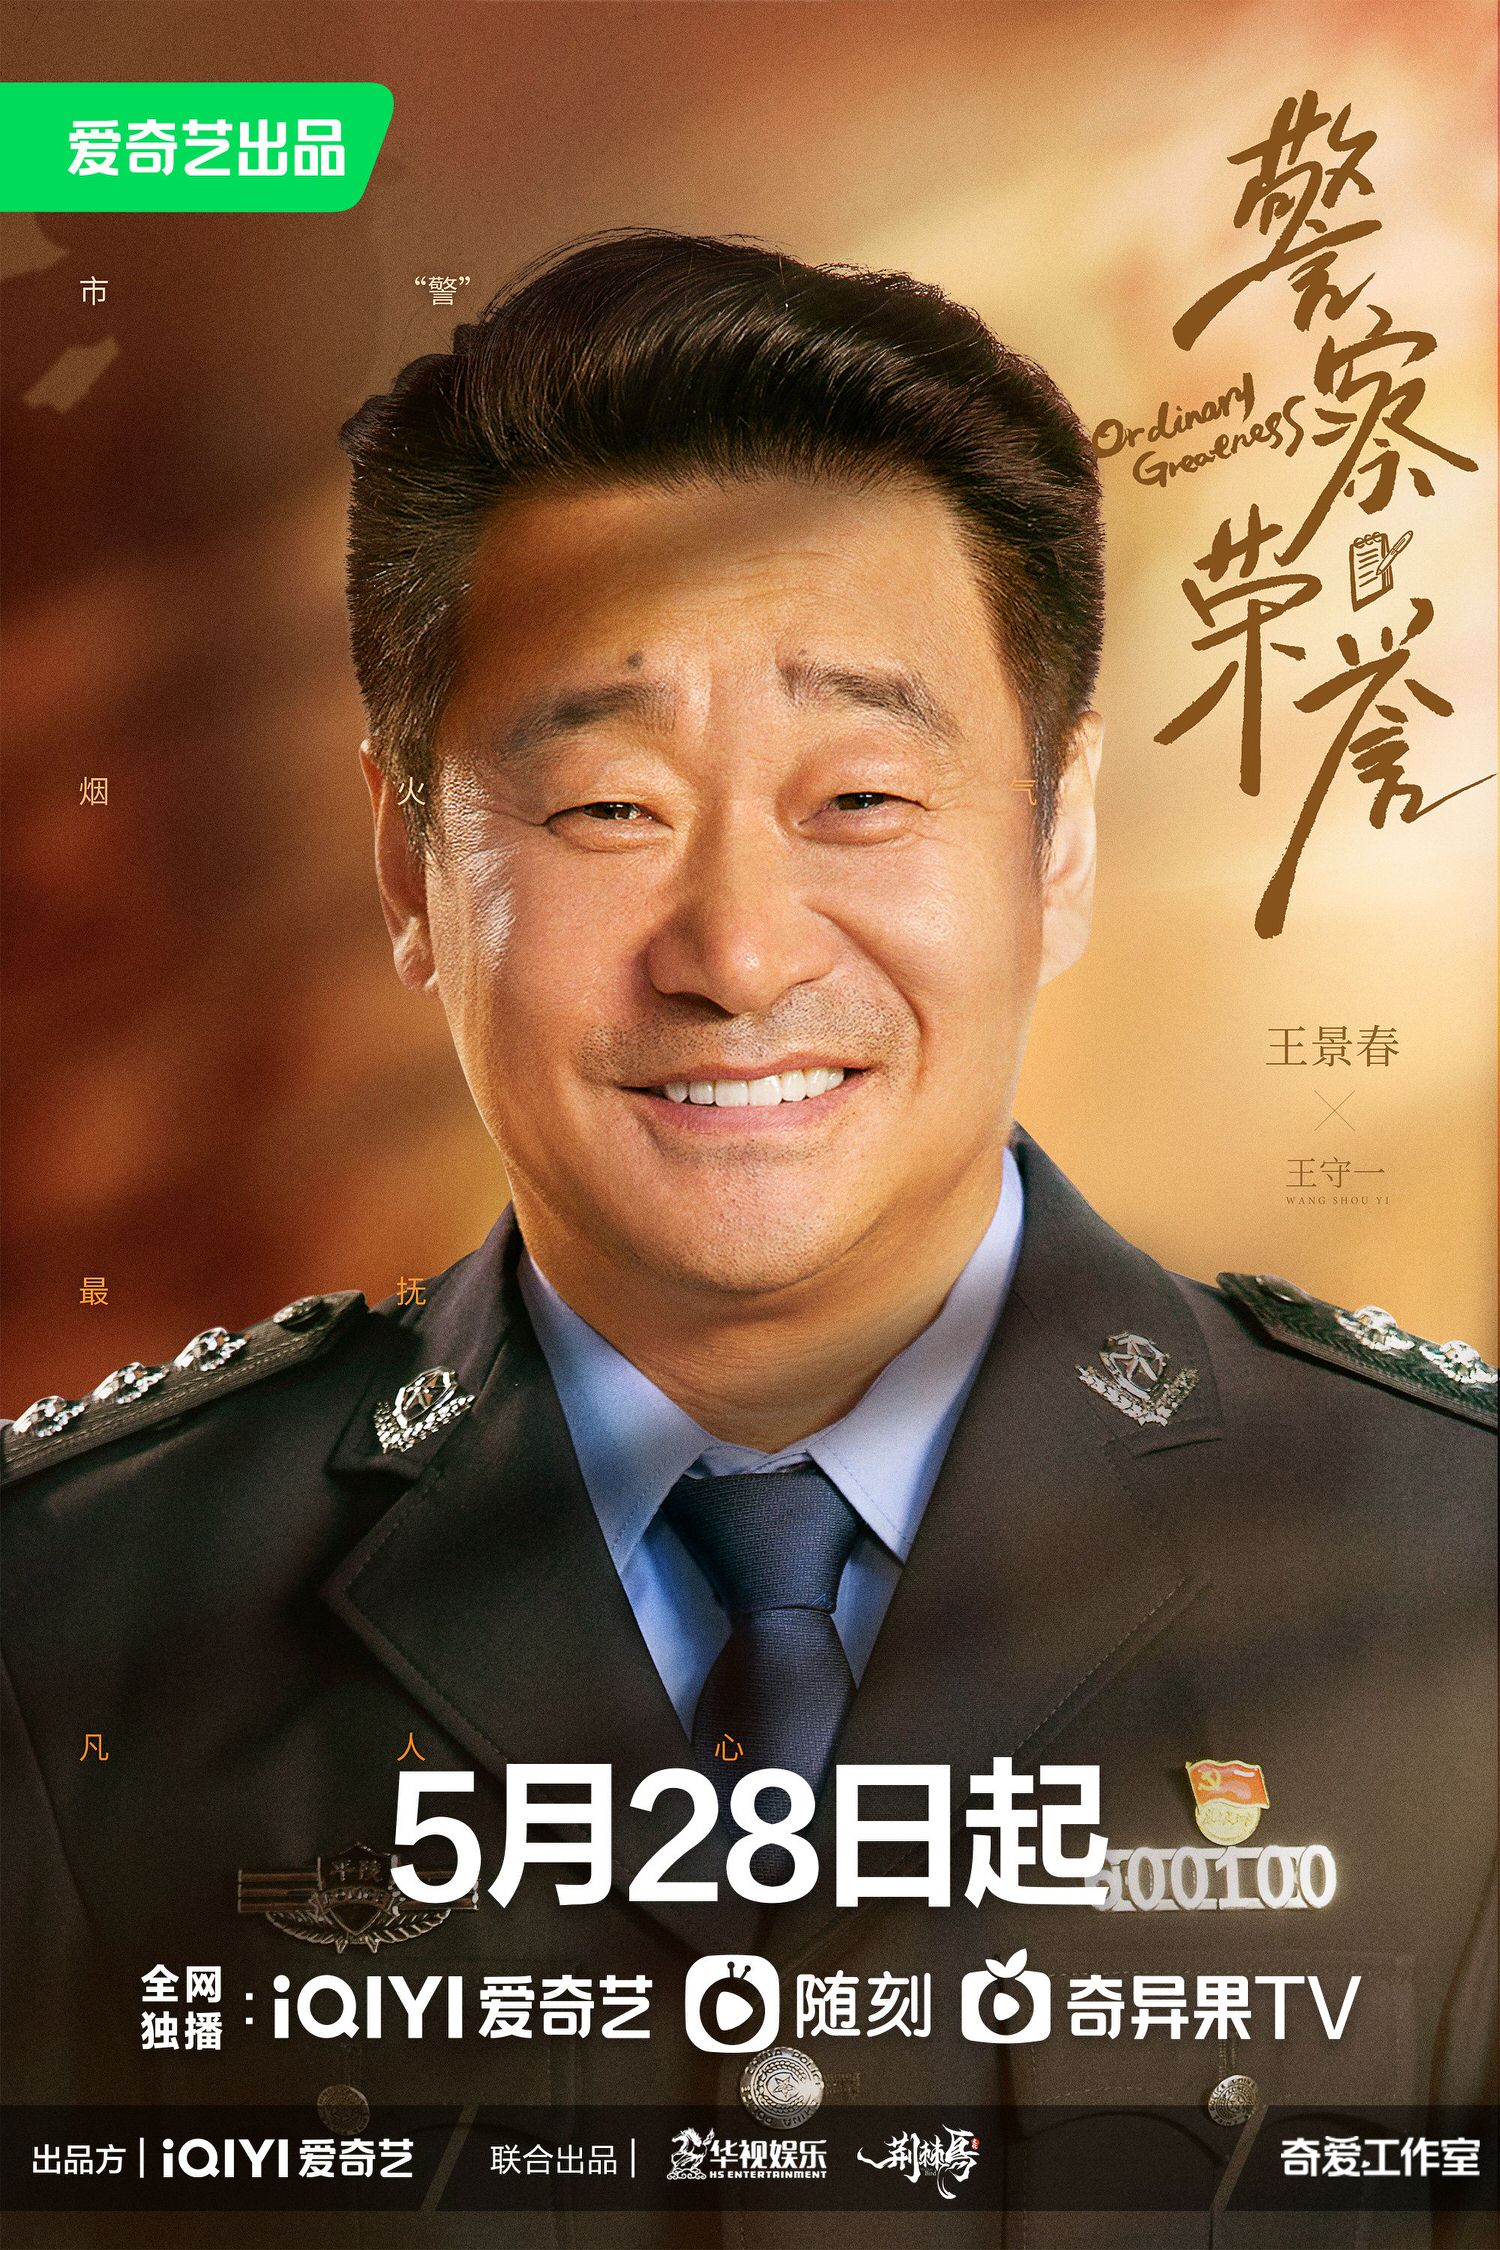 警察榮譽 王景春 1